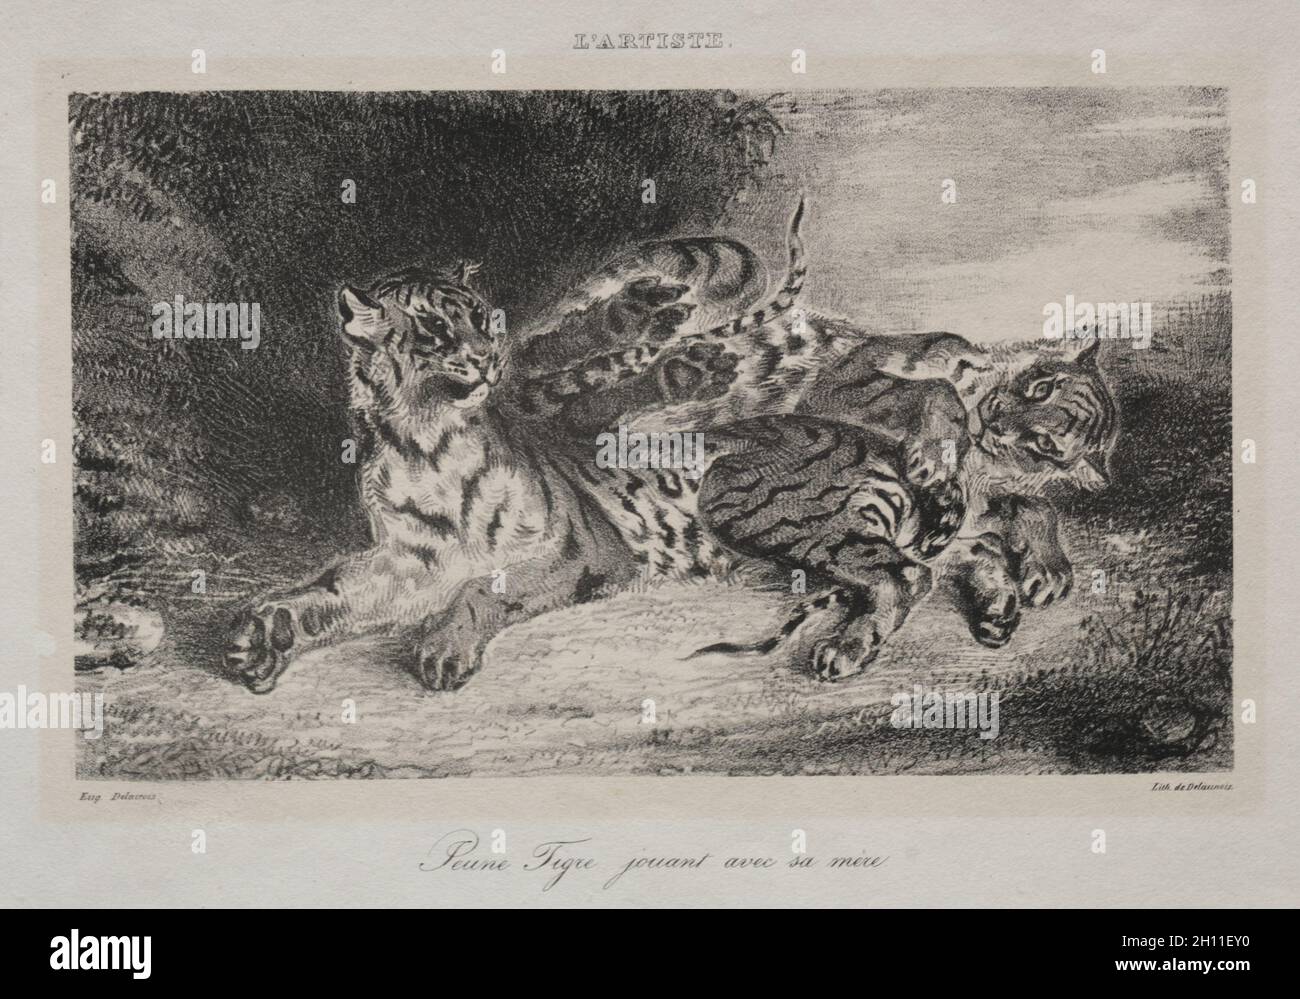 Jeune tigre jouant avec sa mère, 1831.Eugène Delacroix (français, 1798-1863).Lithographie; feuille: 20.4 x 26.7 cm (8 1/16 x 10 1/2 po.); image: 11.2 x 18.9 cm (4 7/16 x 7 7/16 po.). Banque D'Images